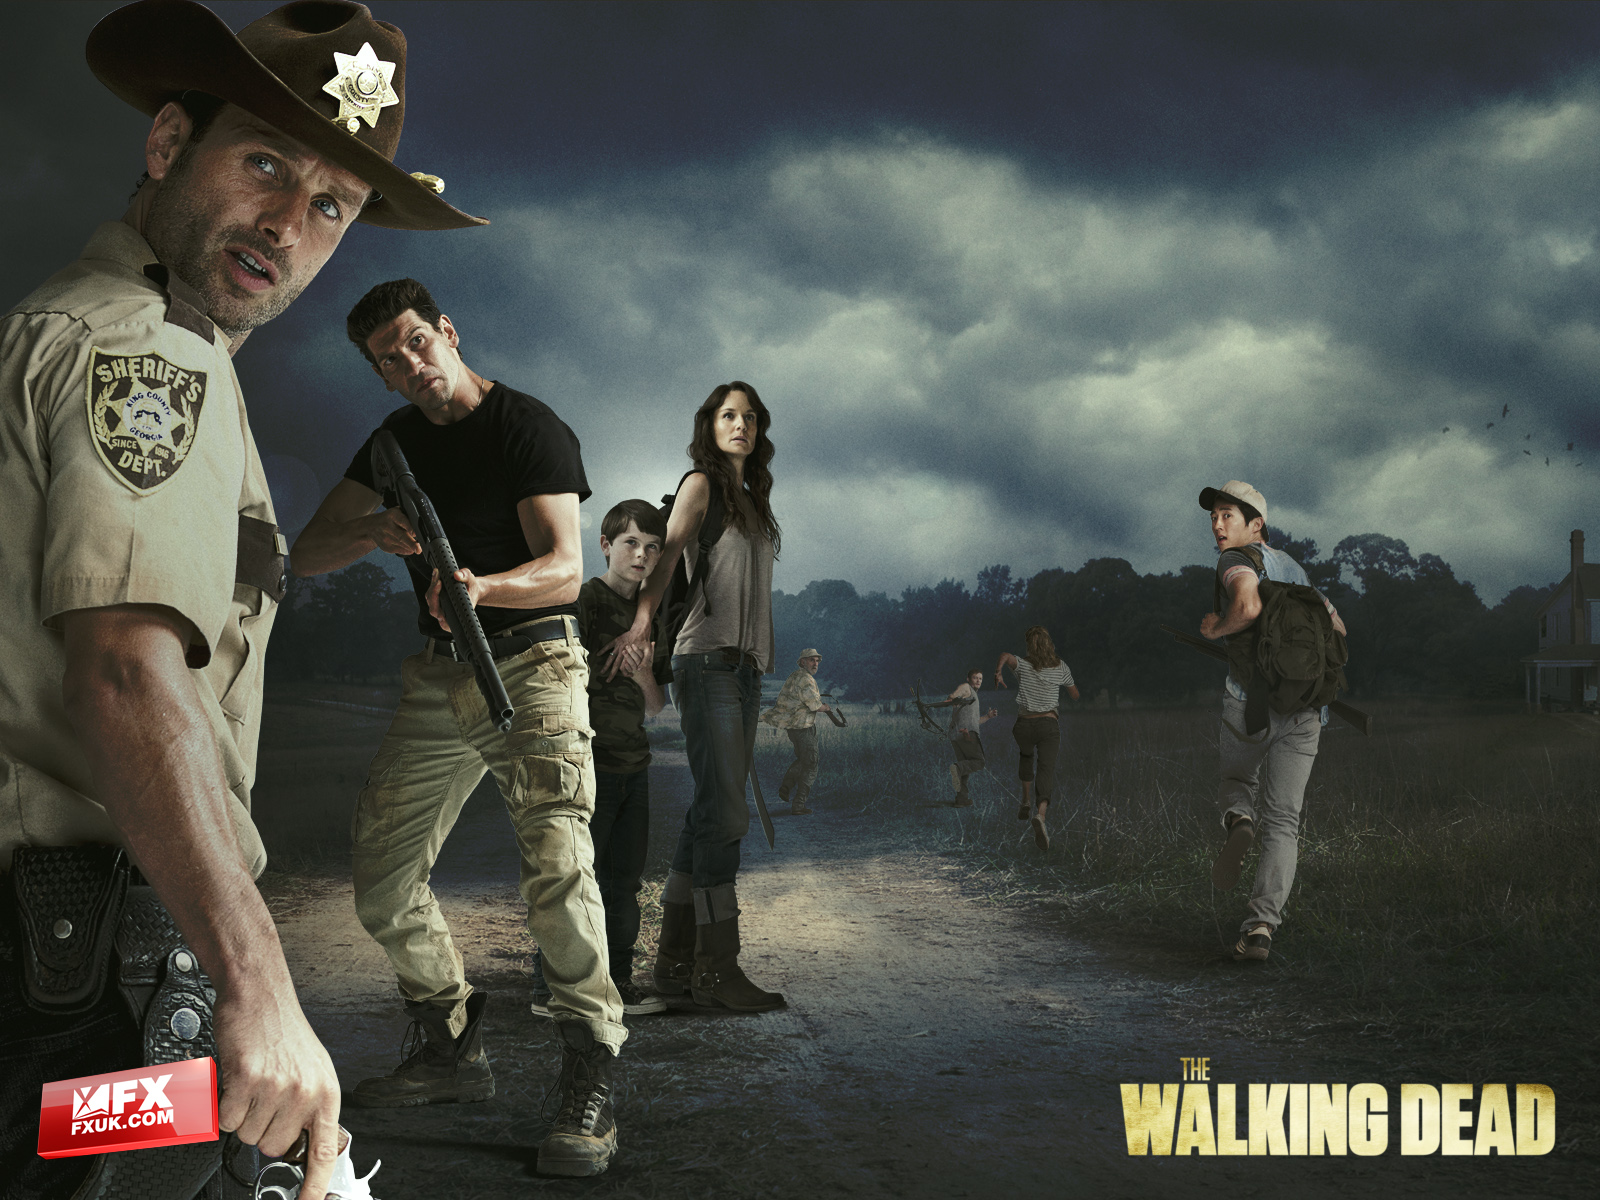 The Walking Dead Wallpaper Jpg